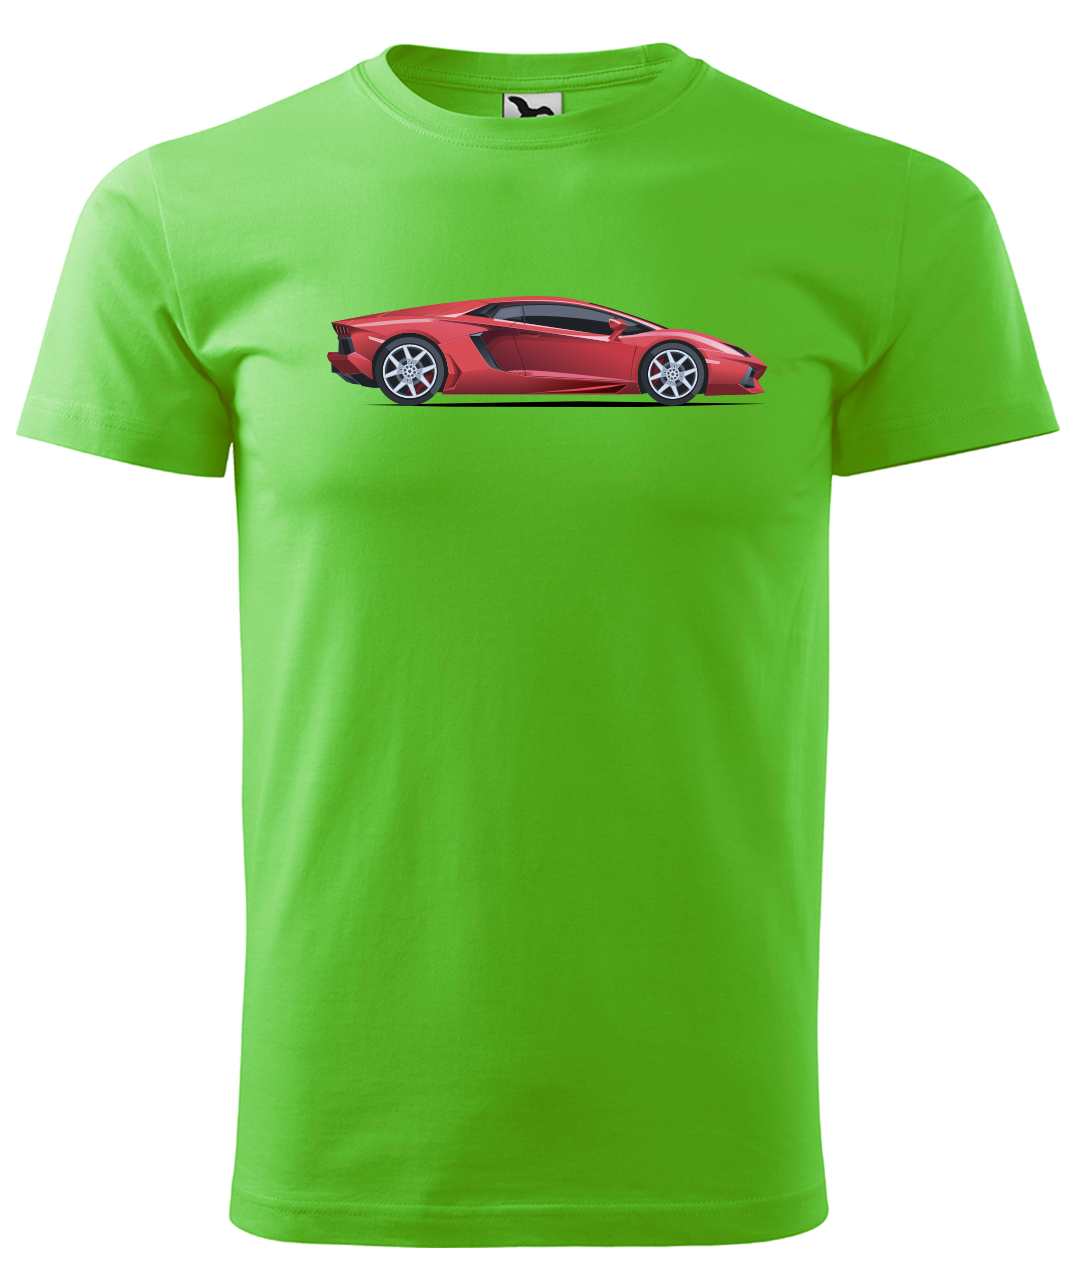 Dětské tričko s autem - Červený sporťák Velikost: 4 roky / 110 cm, Barva: Apple Green (92)